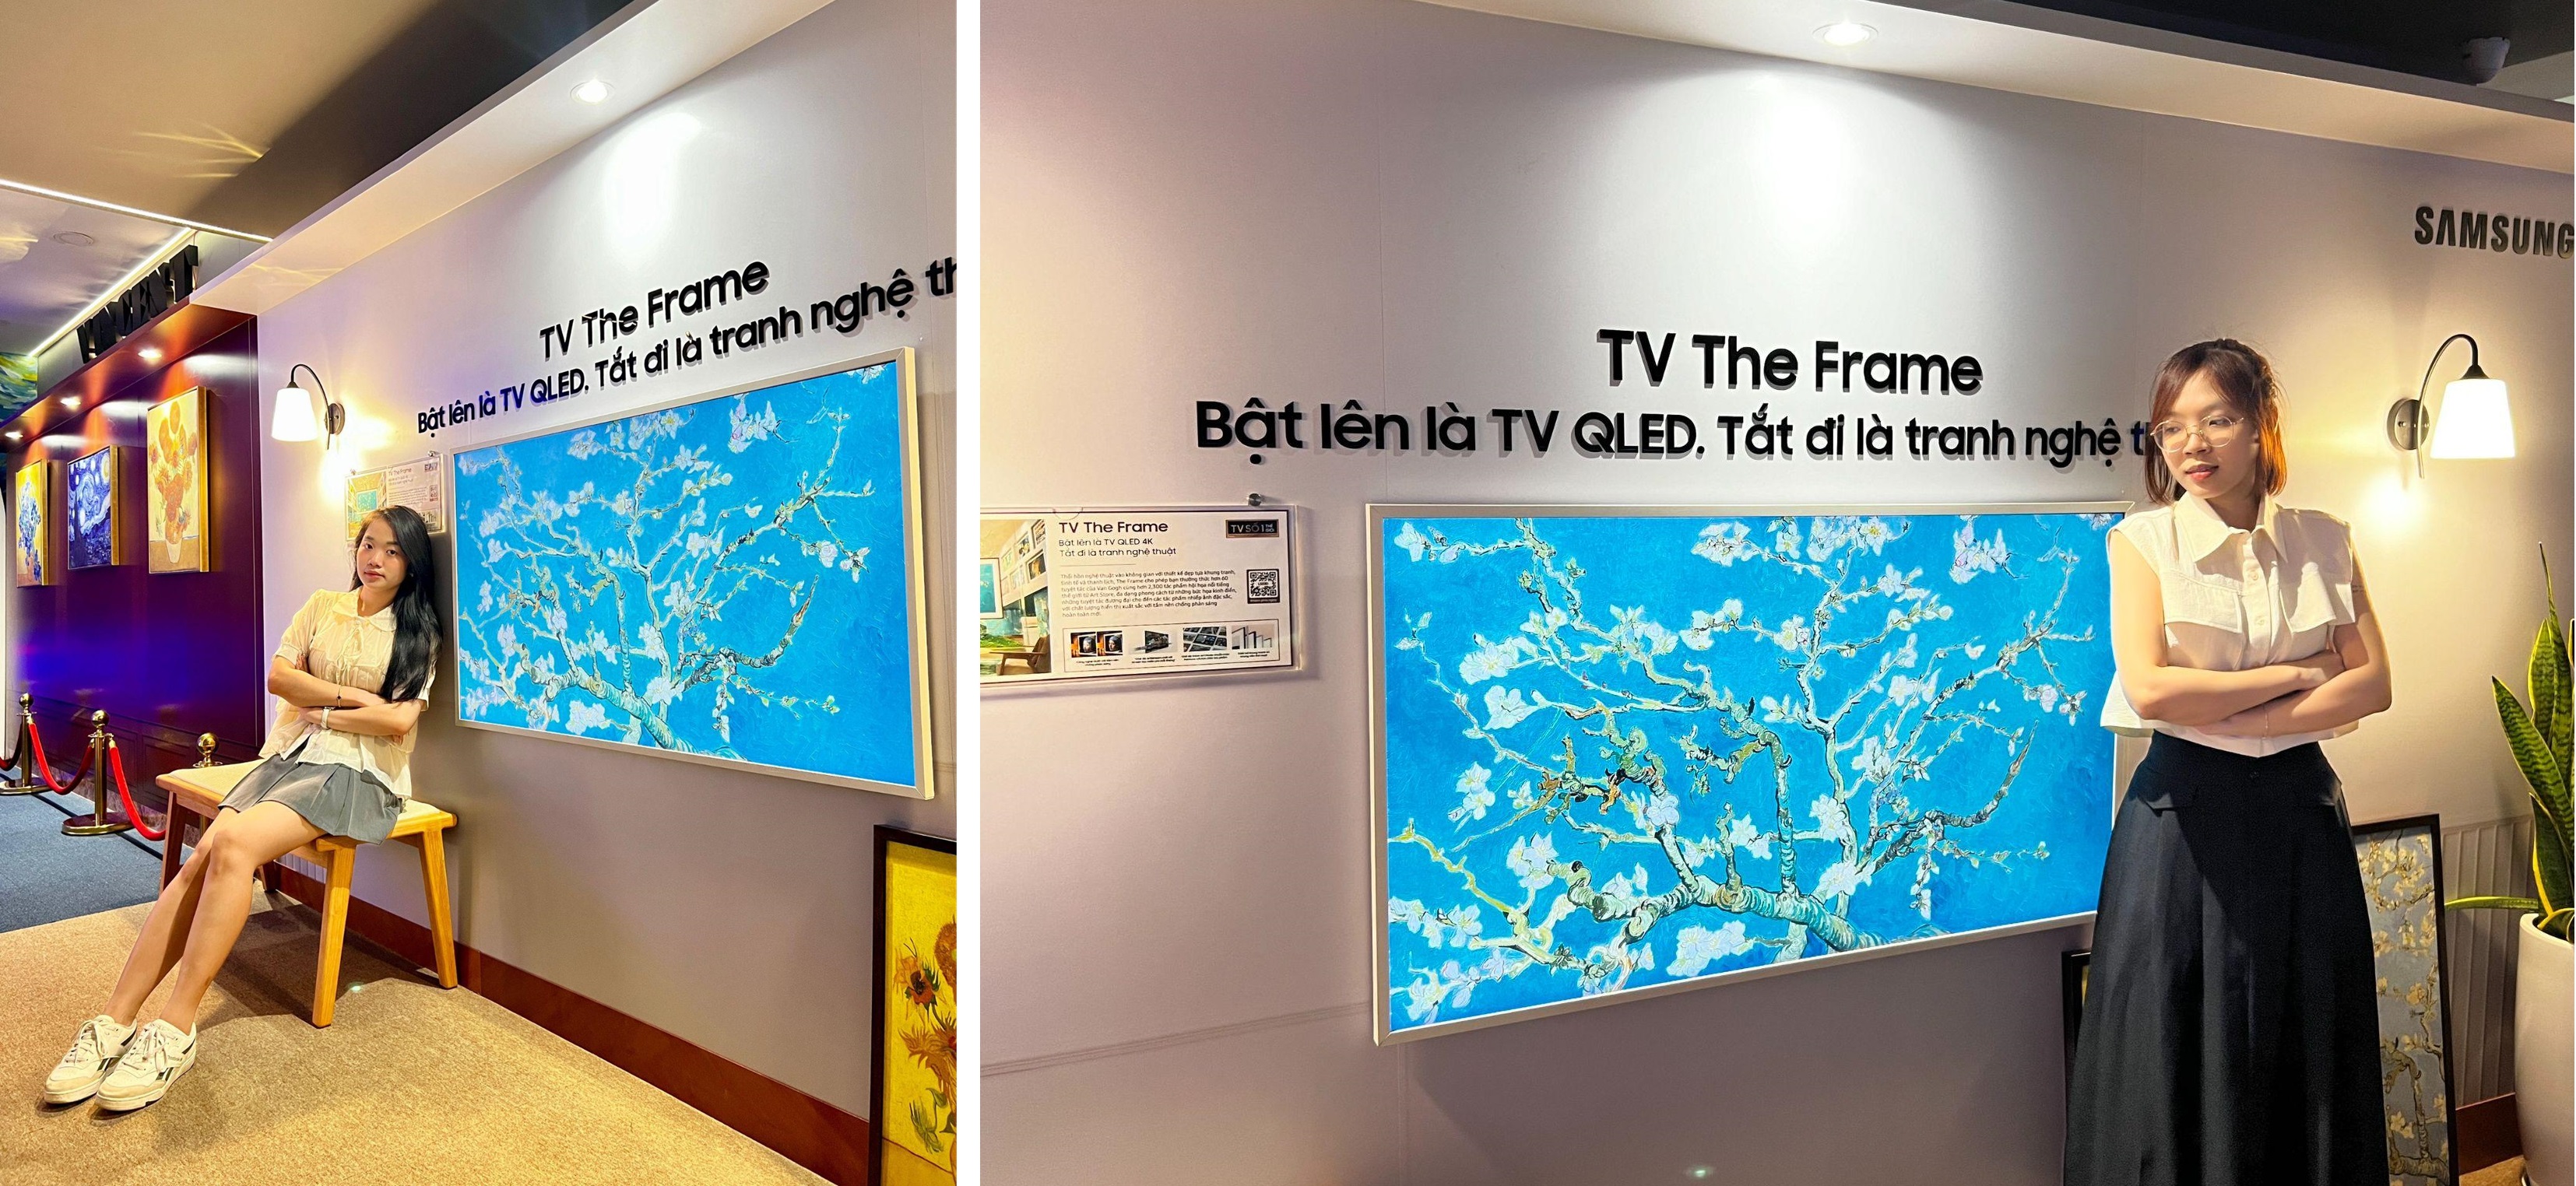 Lạc lối giữa không gian nghệ thuật Van Gogh cùng TV The Frame - Ảnh 3.